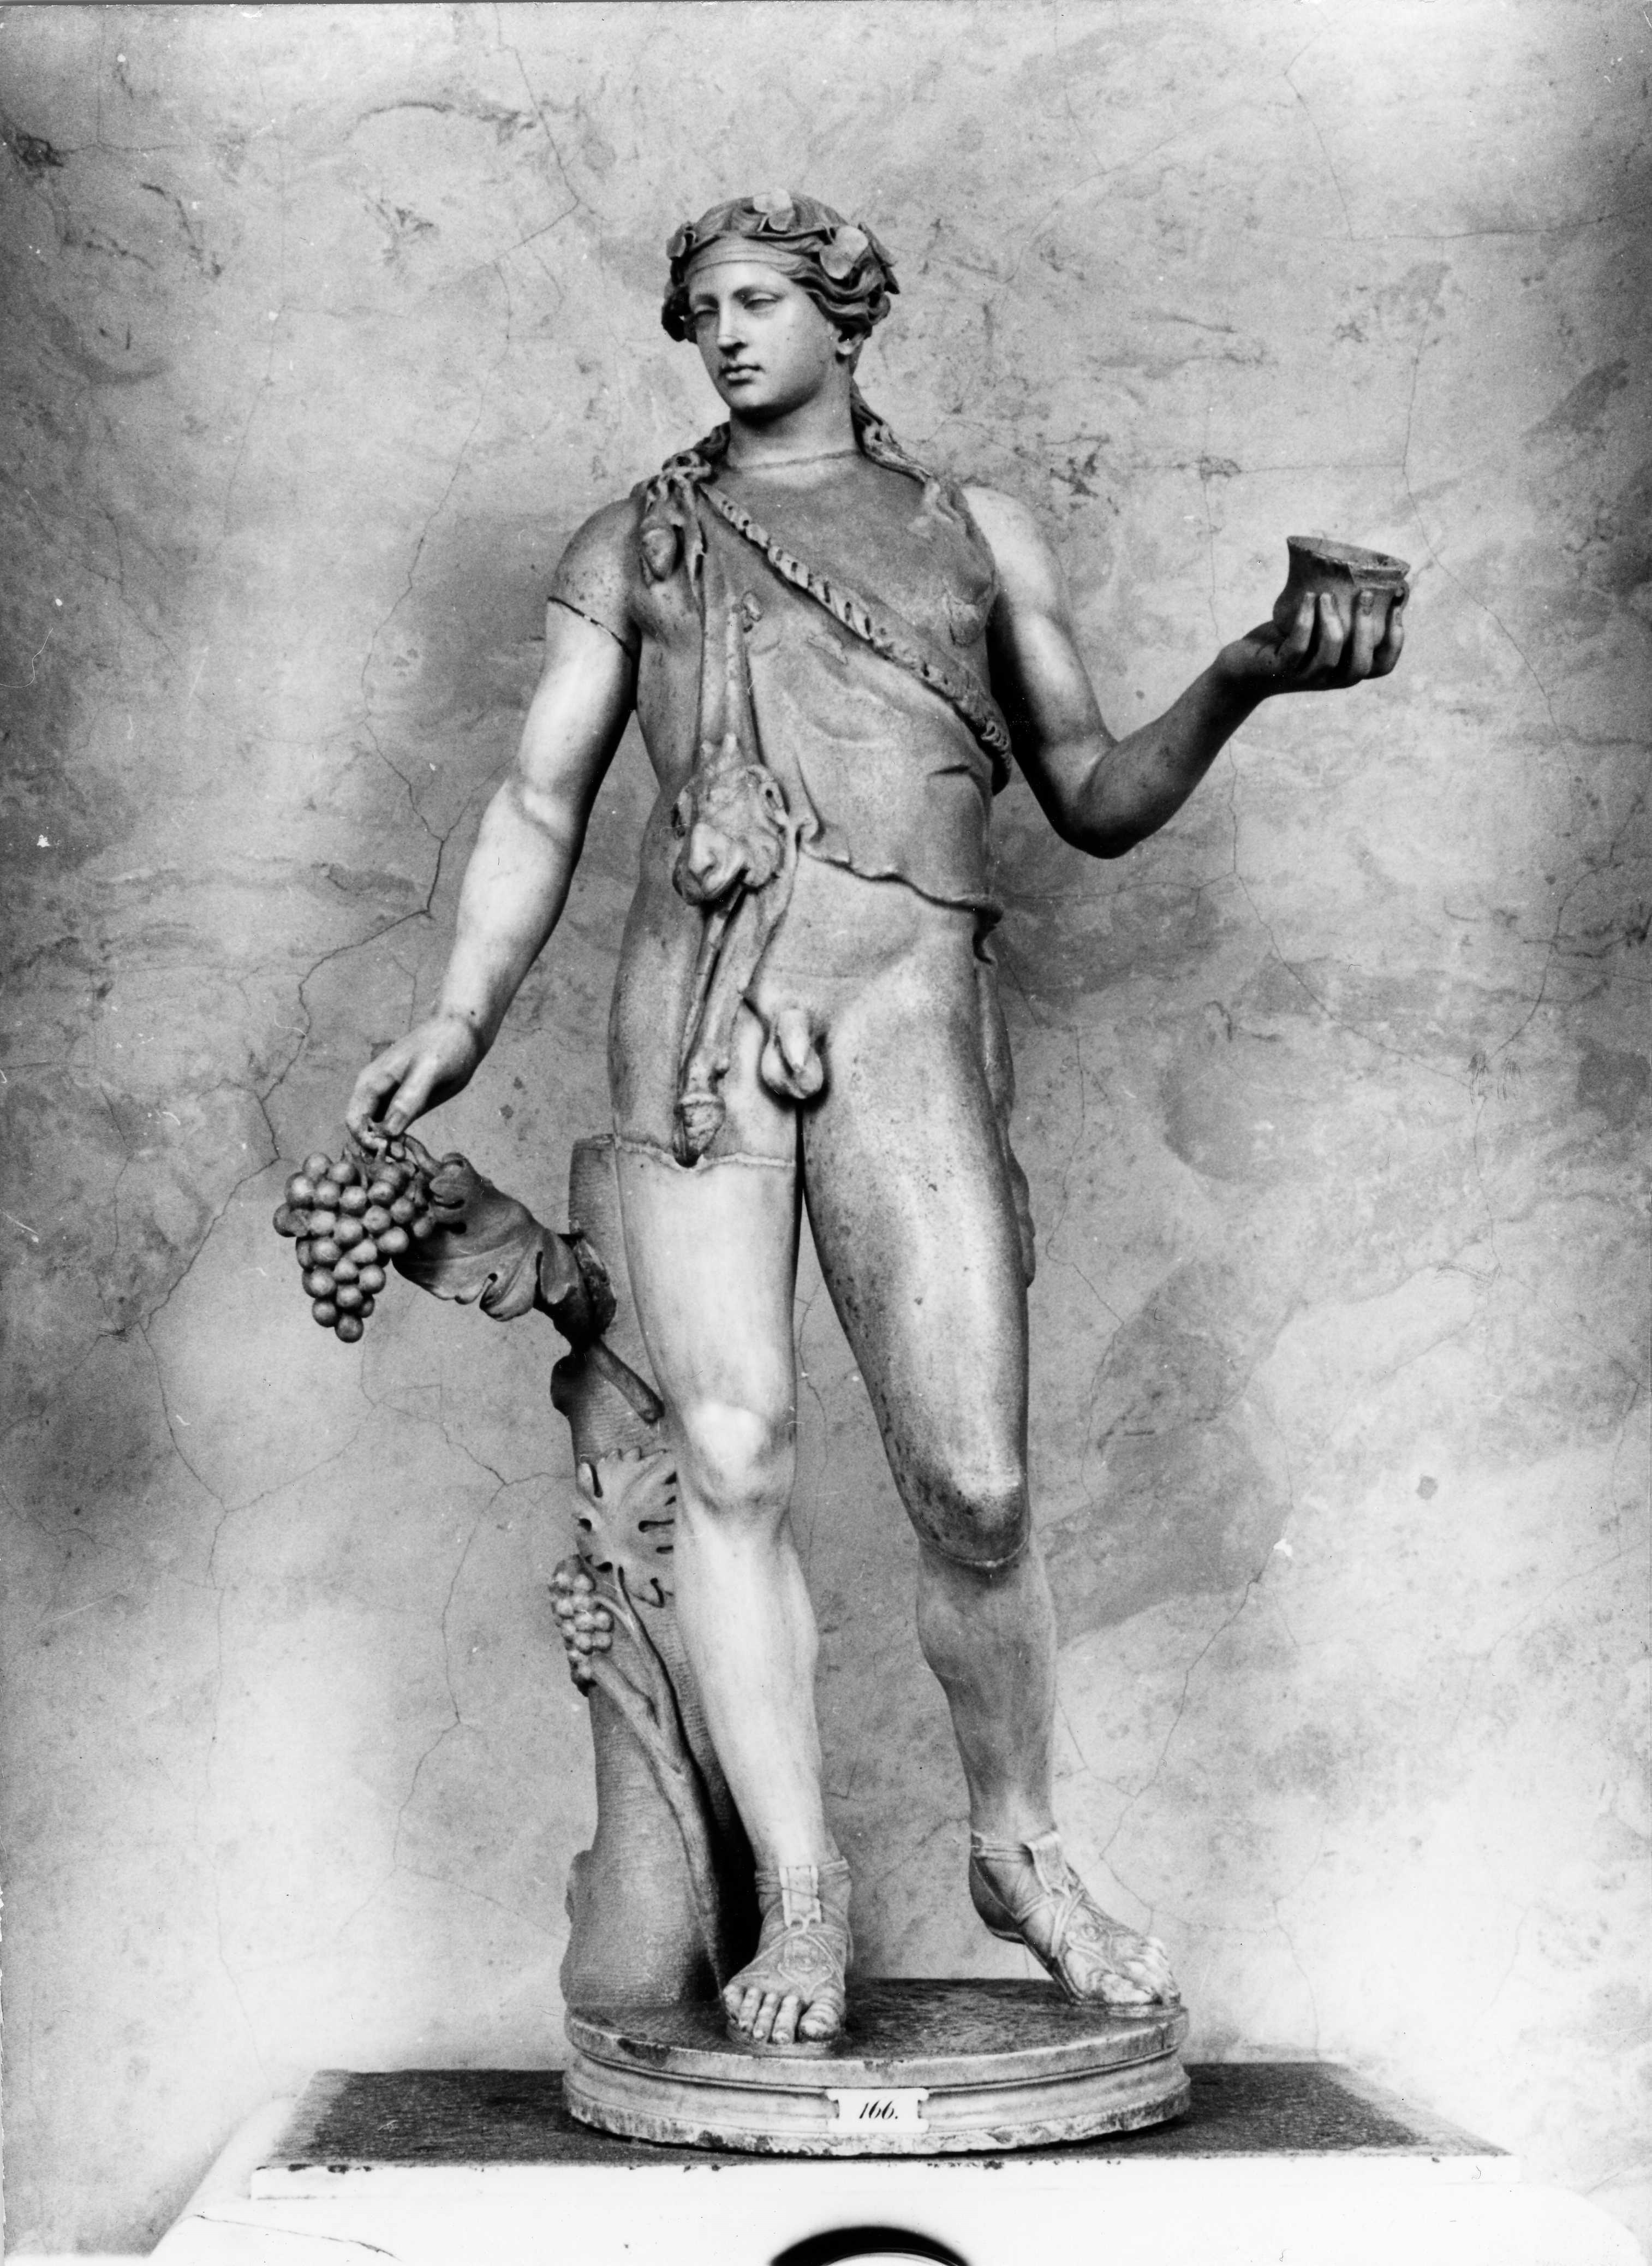 Unbekannter Künstler der Antike: Statue des Dionysos, 3. Viertel 2. Jh., Marmor, Skulpt.slg. 197. (Stiftung Preußische Schlösser und Gärten Berlin-Brandenburg CC BY-NC-SA)